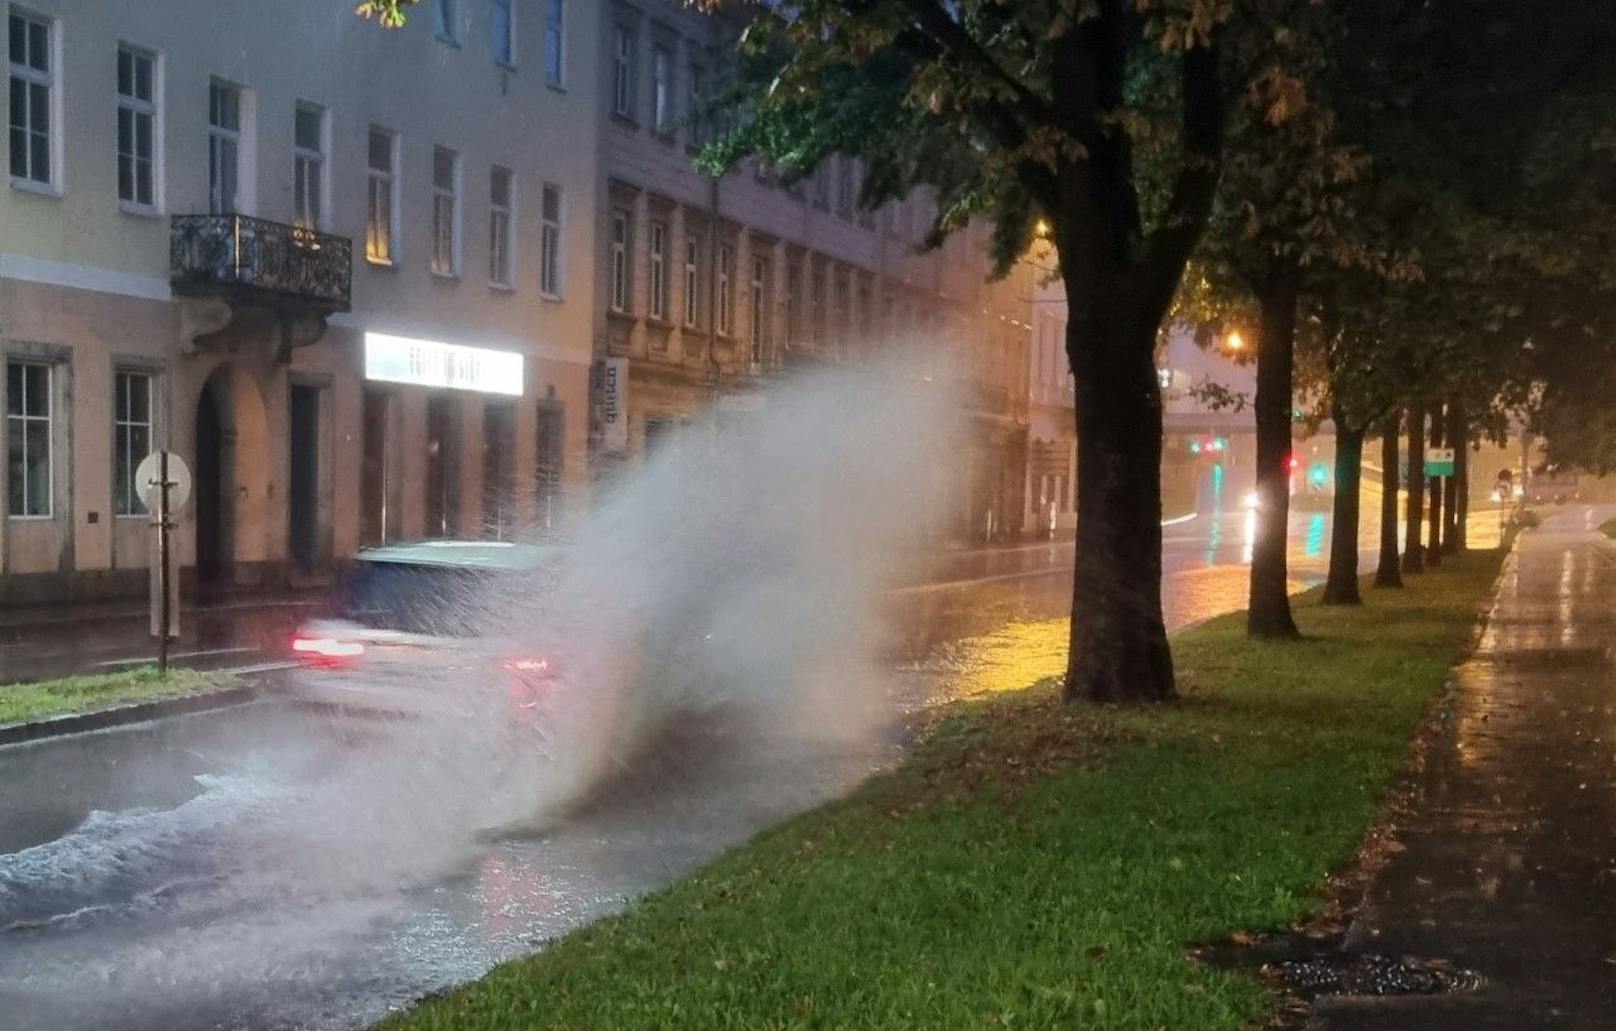 Auch am Sonntag werden in Teilen Österreichs wieder kräftige Starkregenschauer erwartet. Bild vom 28.08.2022, aufgenommen in Linz.